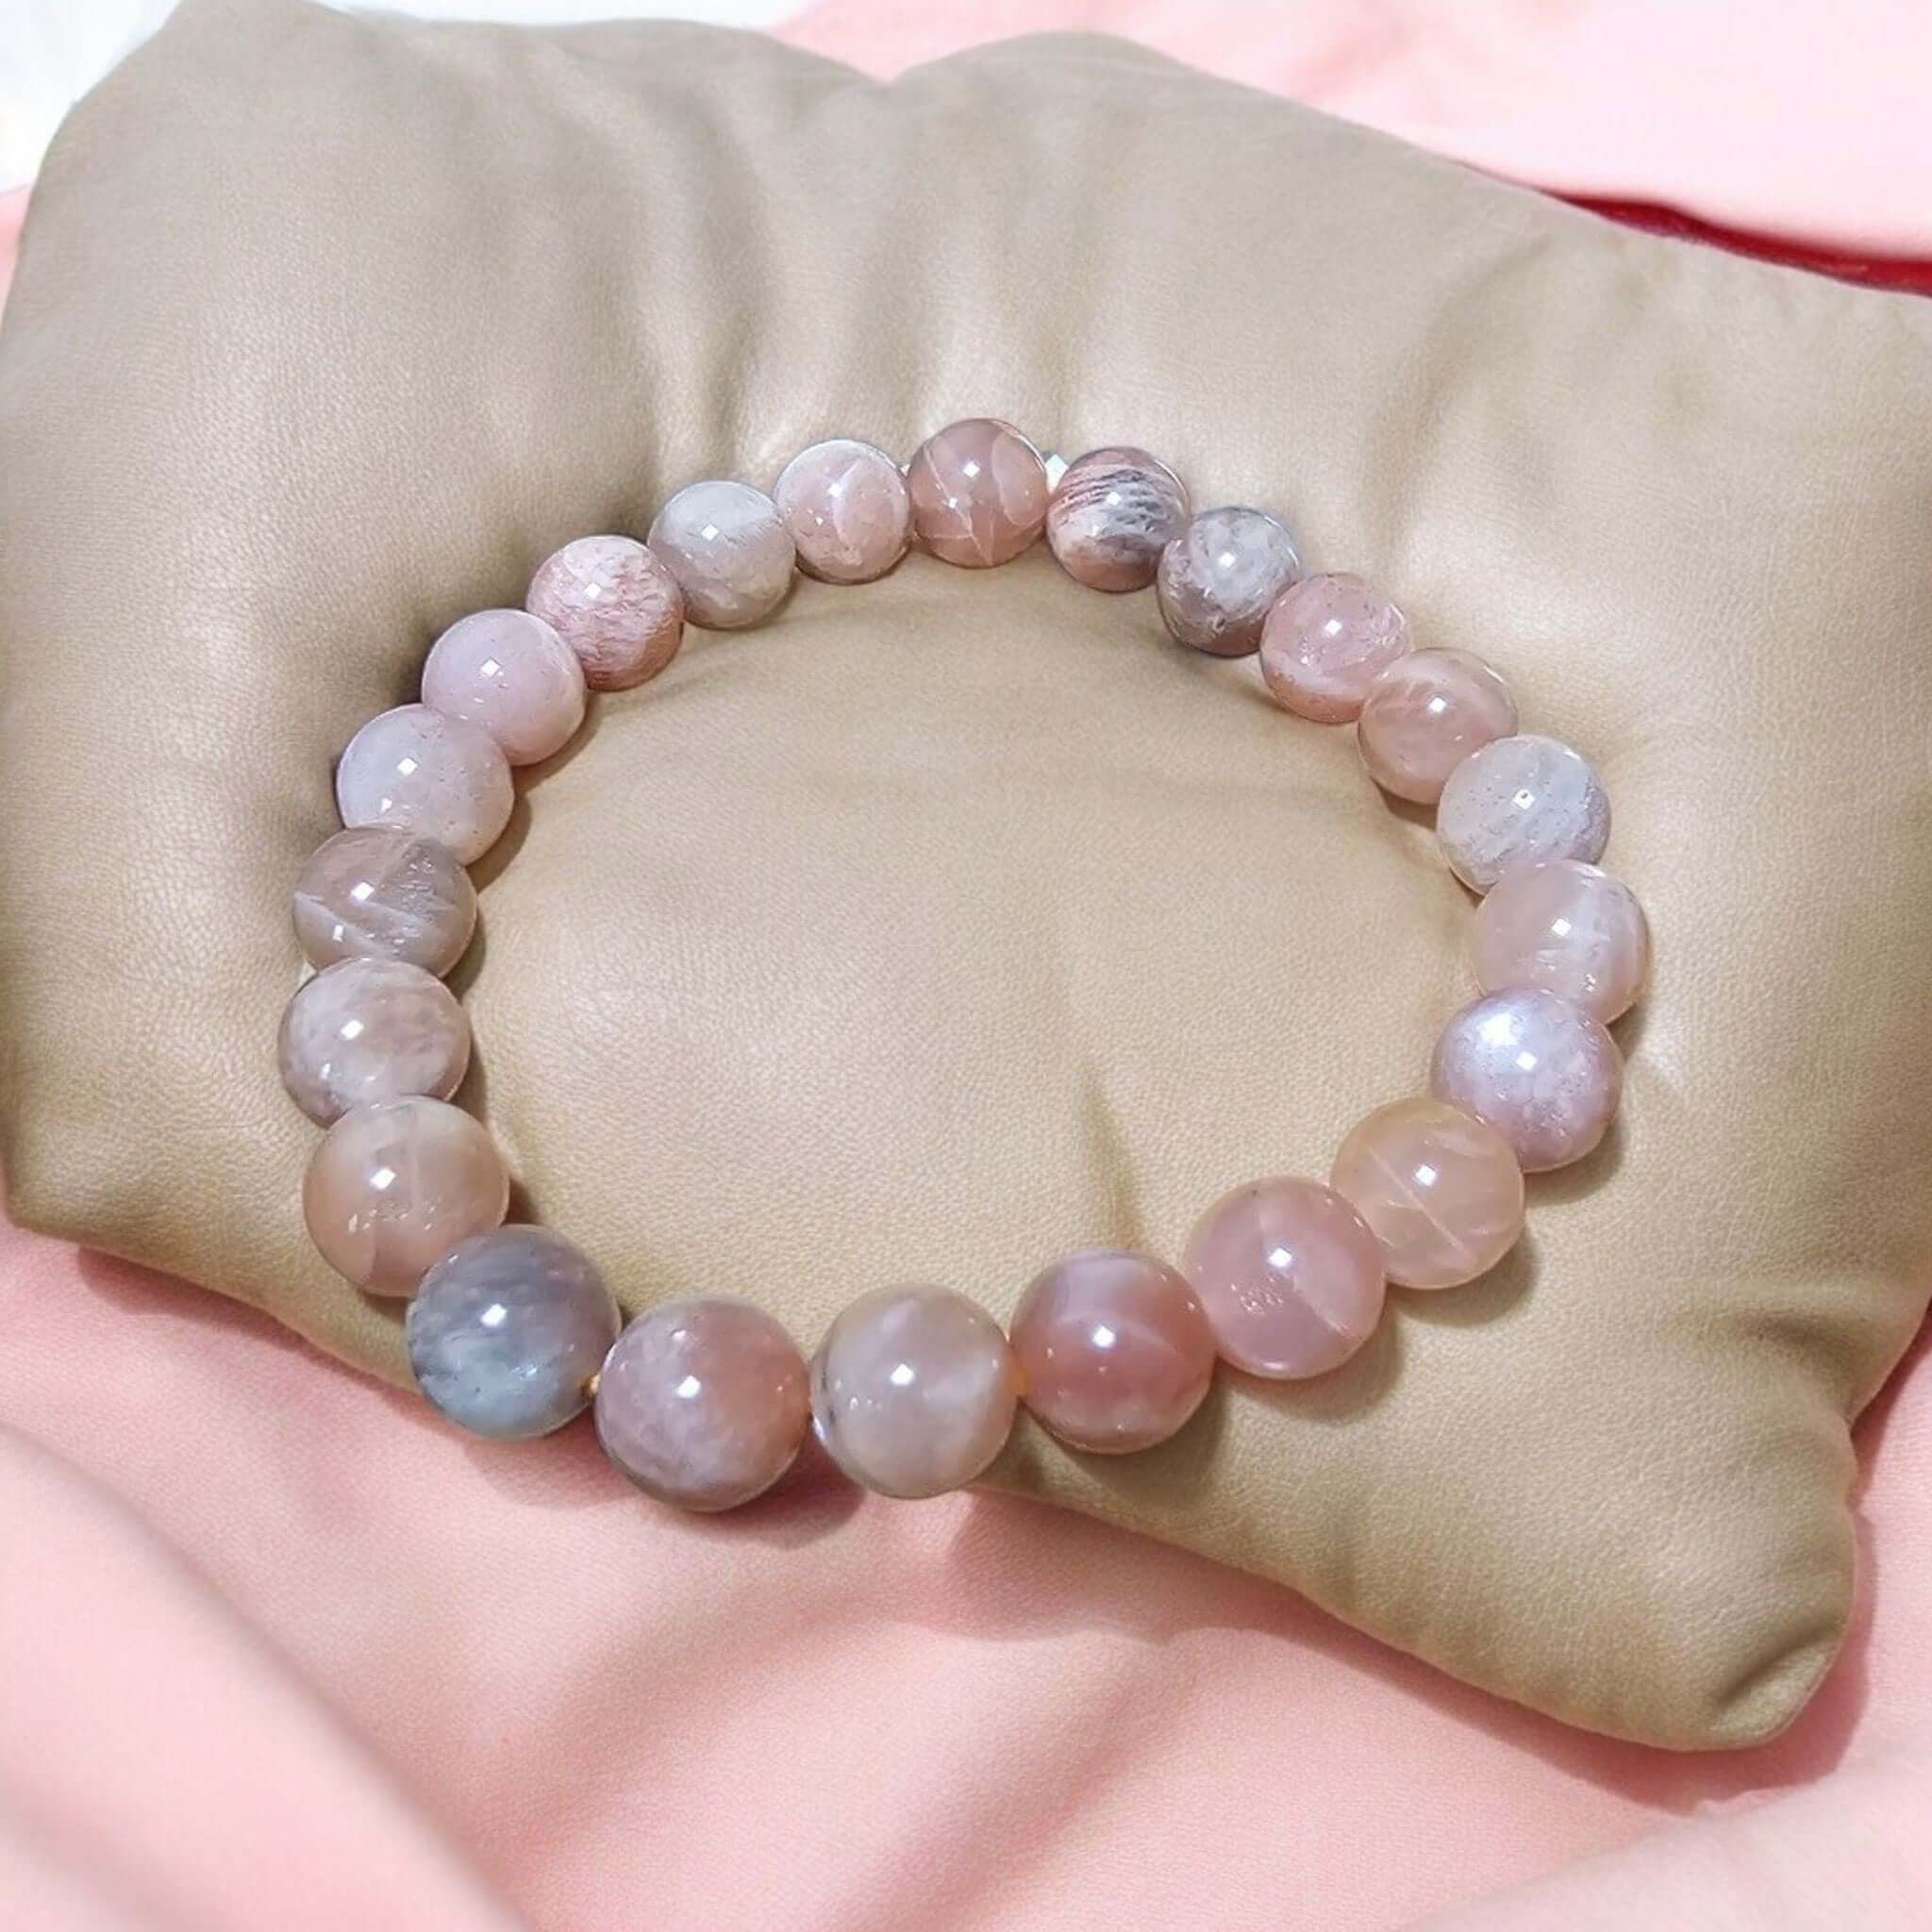 Armband mit runden Perlen aus rosafarbenem Mondstein